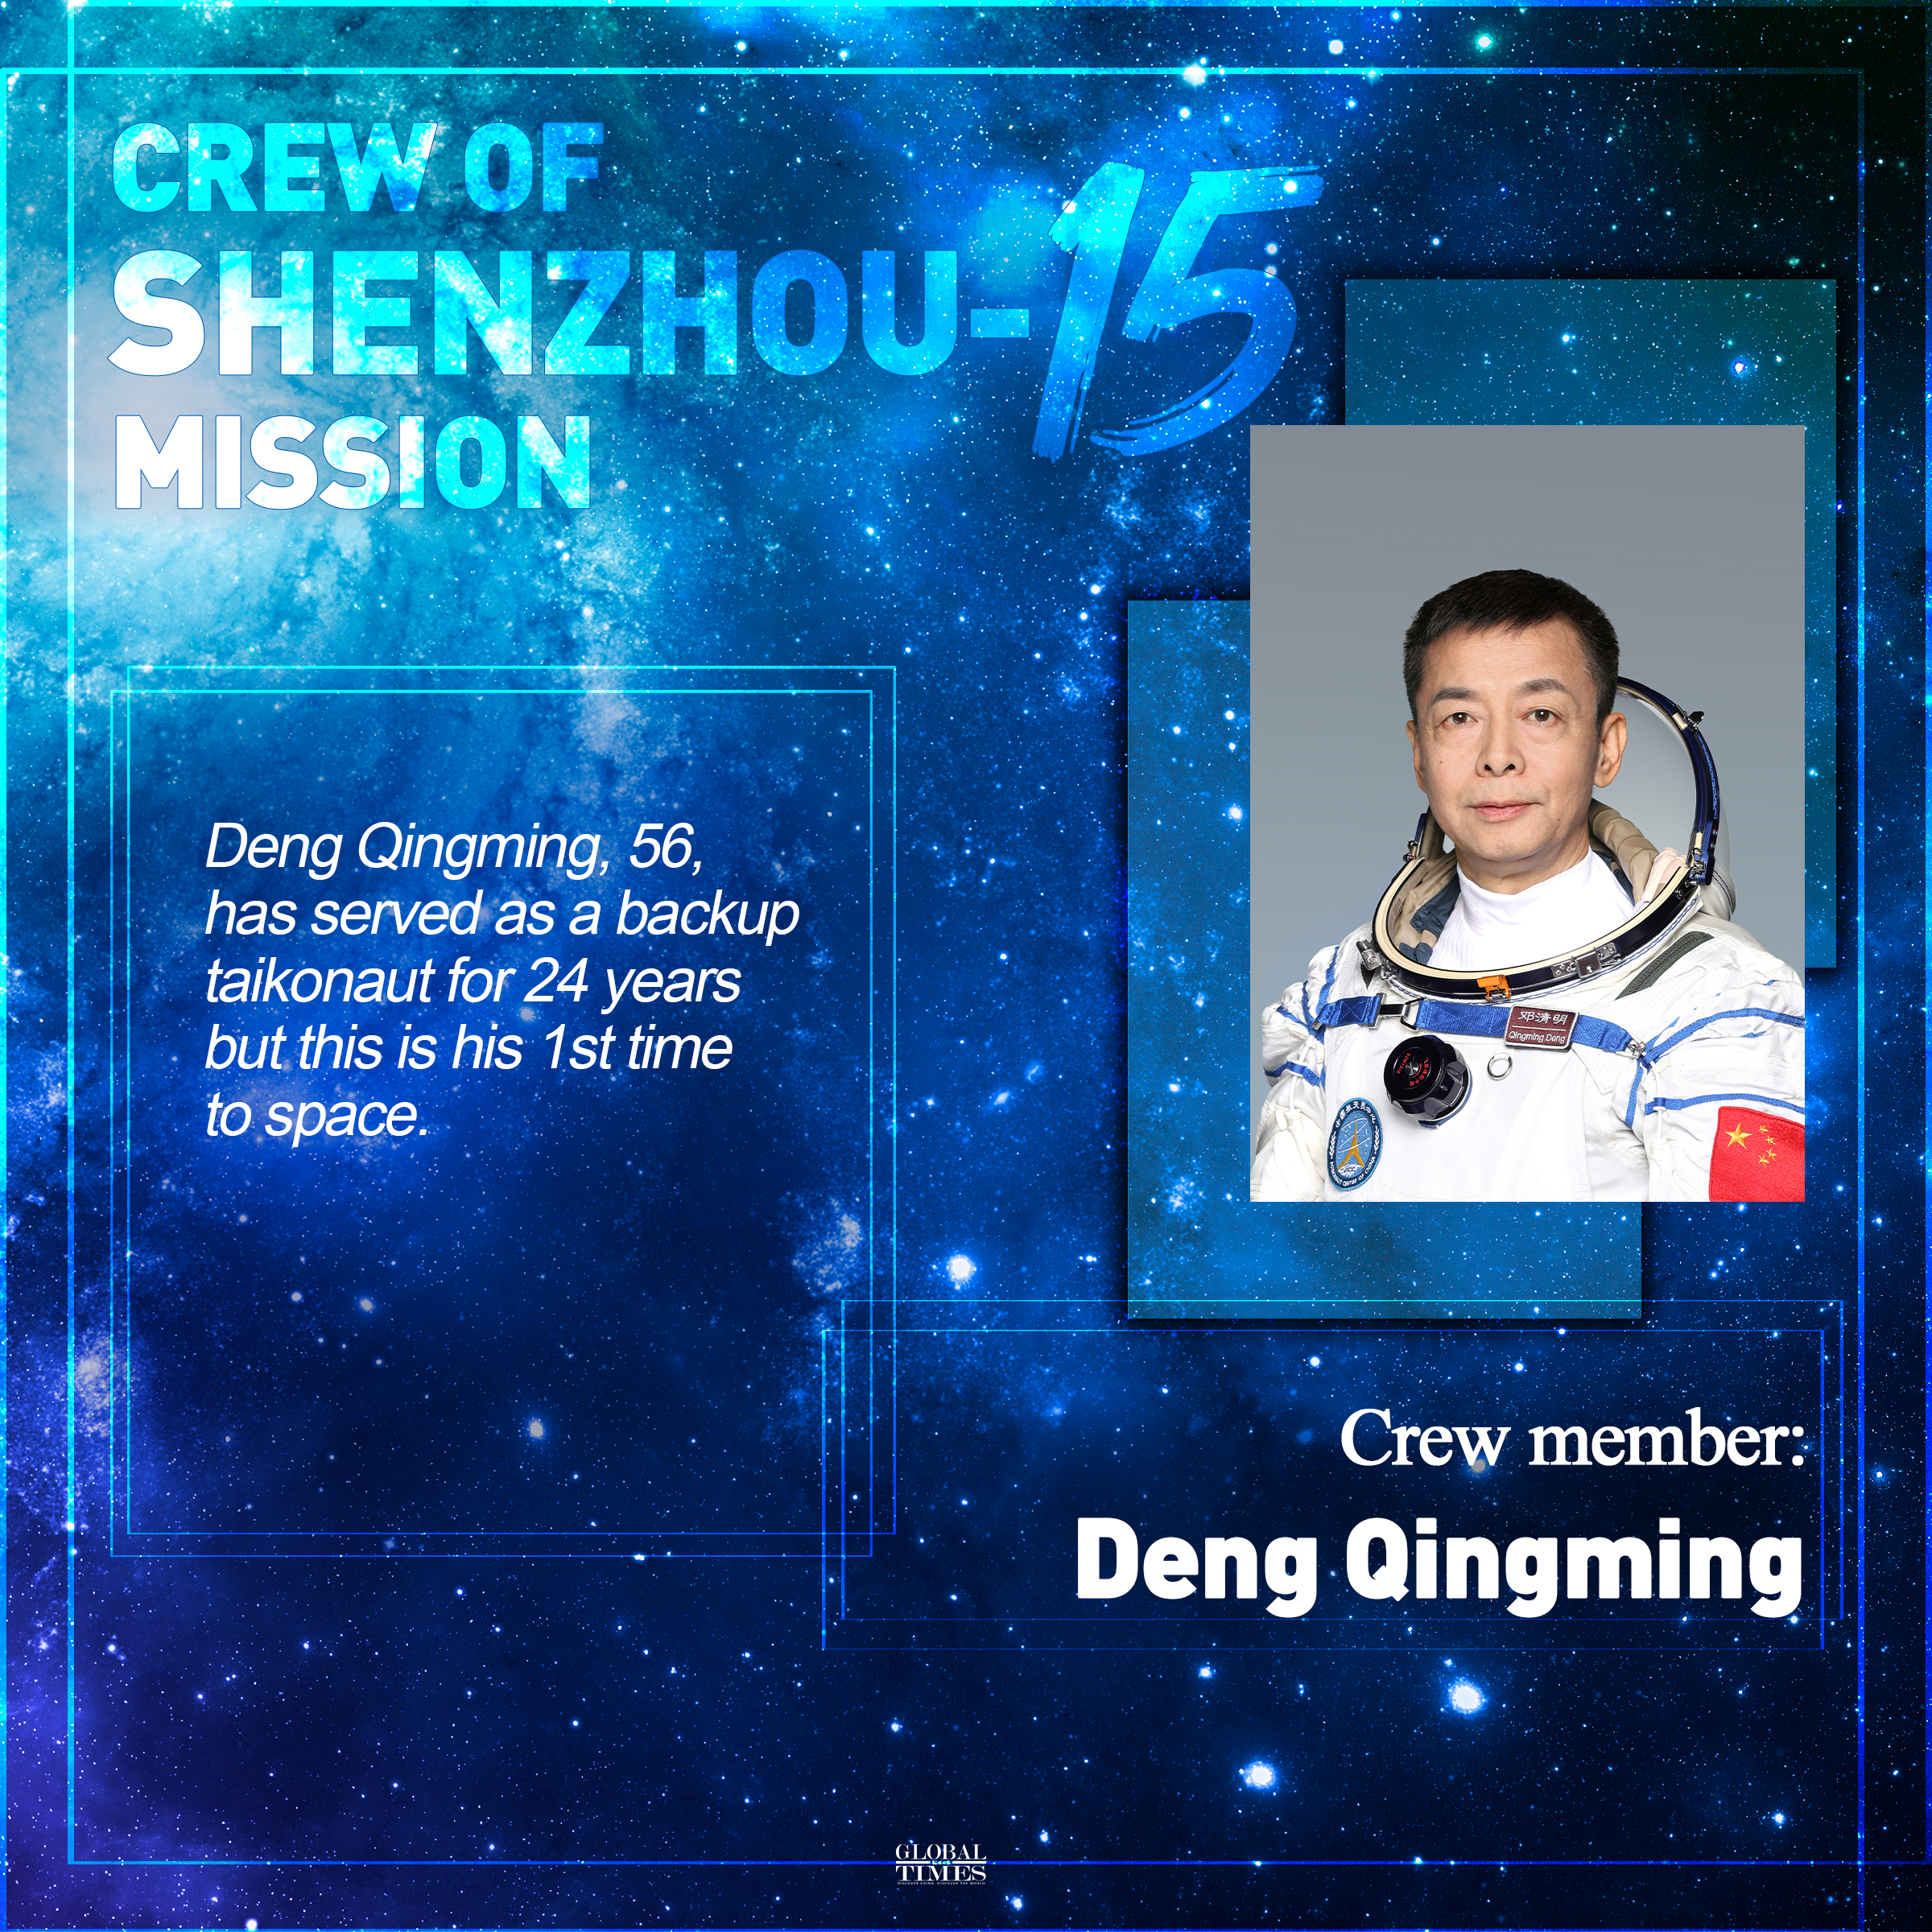 Crew of Shenzhou-15 mission